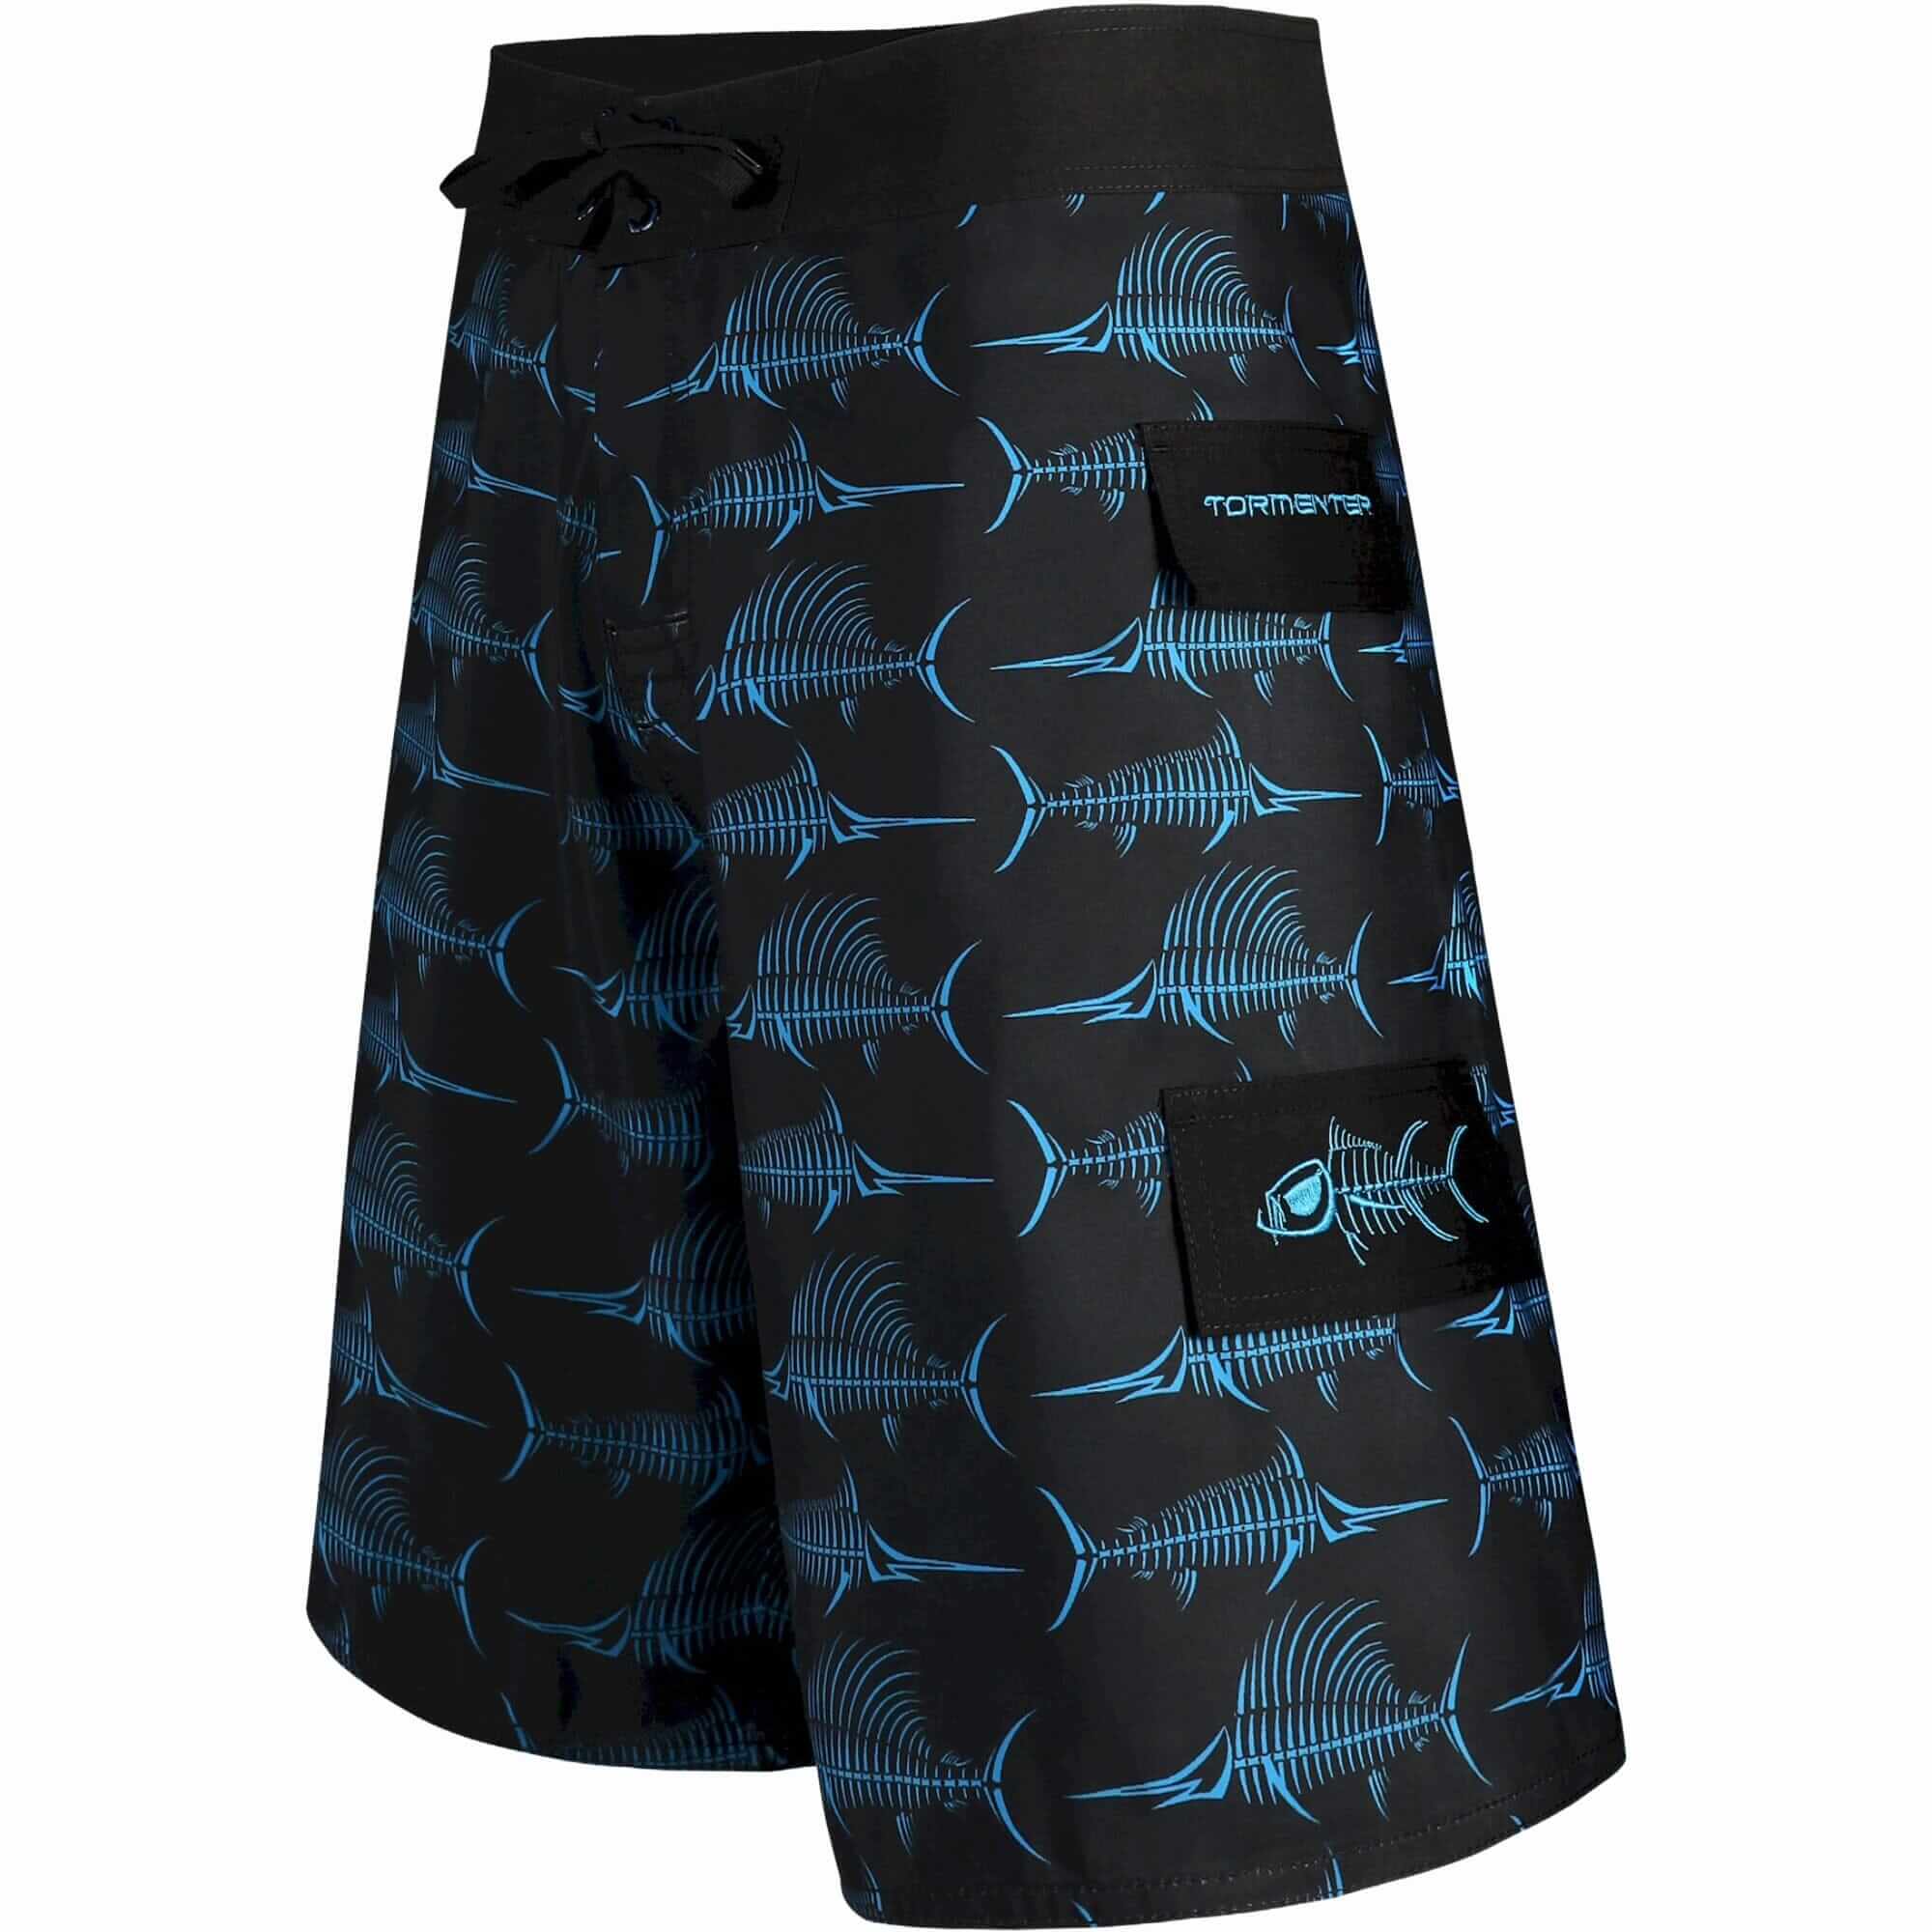 Tormenter Ocean Billfish Bones Board Shorts - Black/Blue, 36